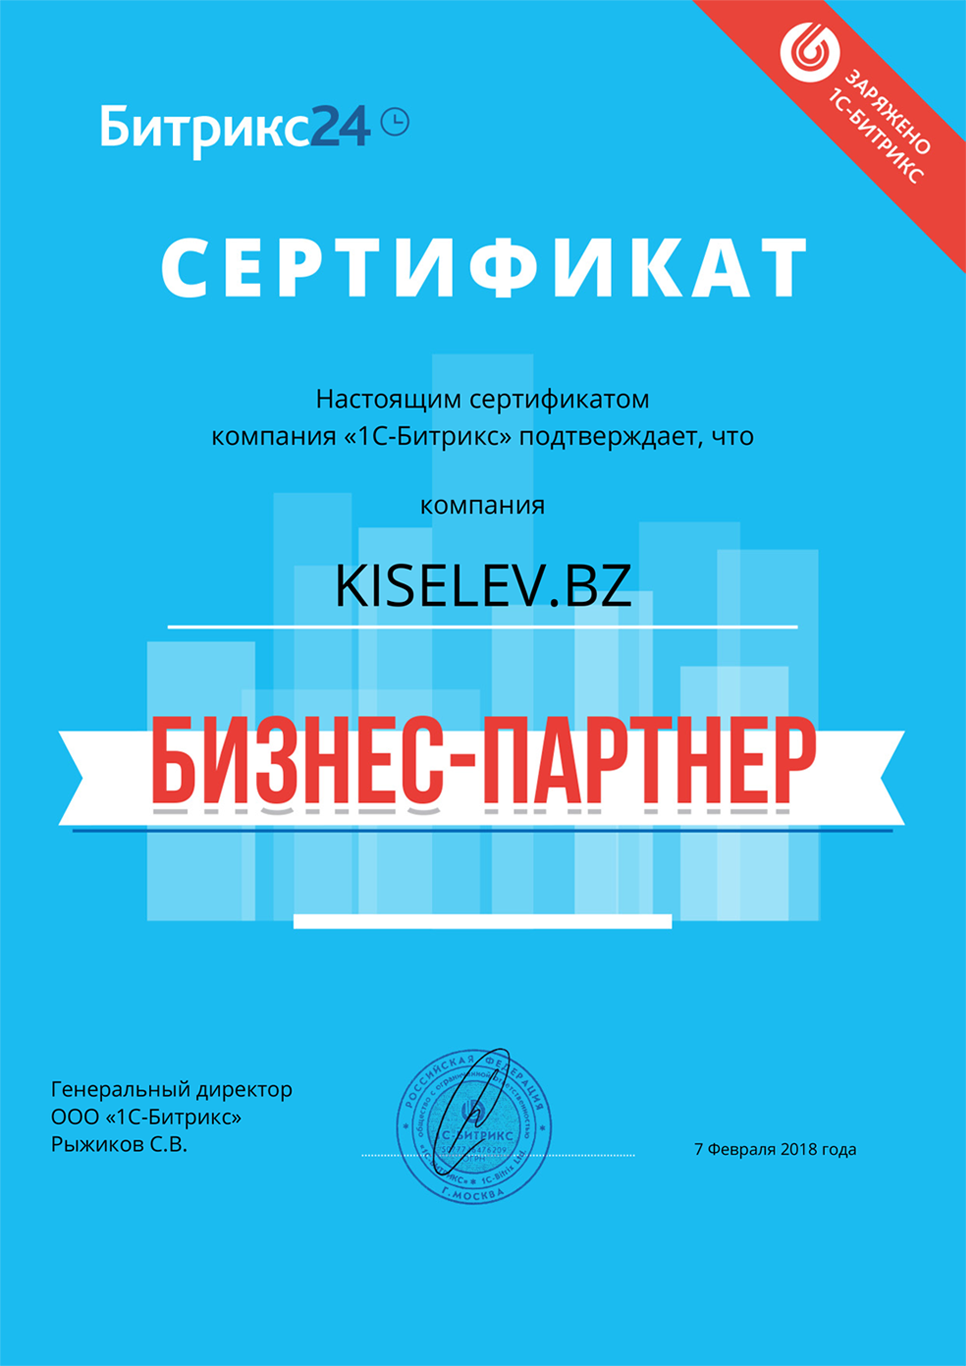 Сертификат партнёра по АМОСРМ в Ростове Великом